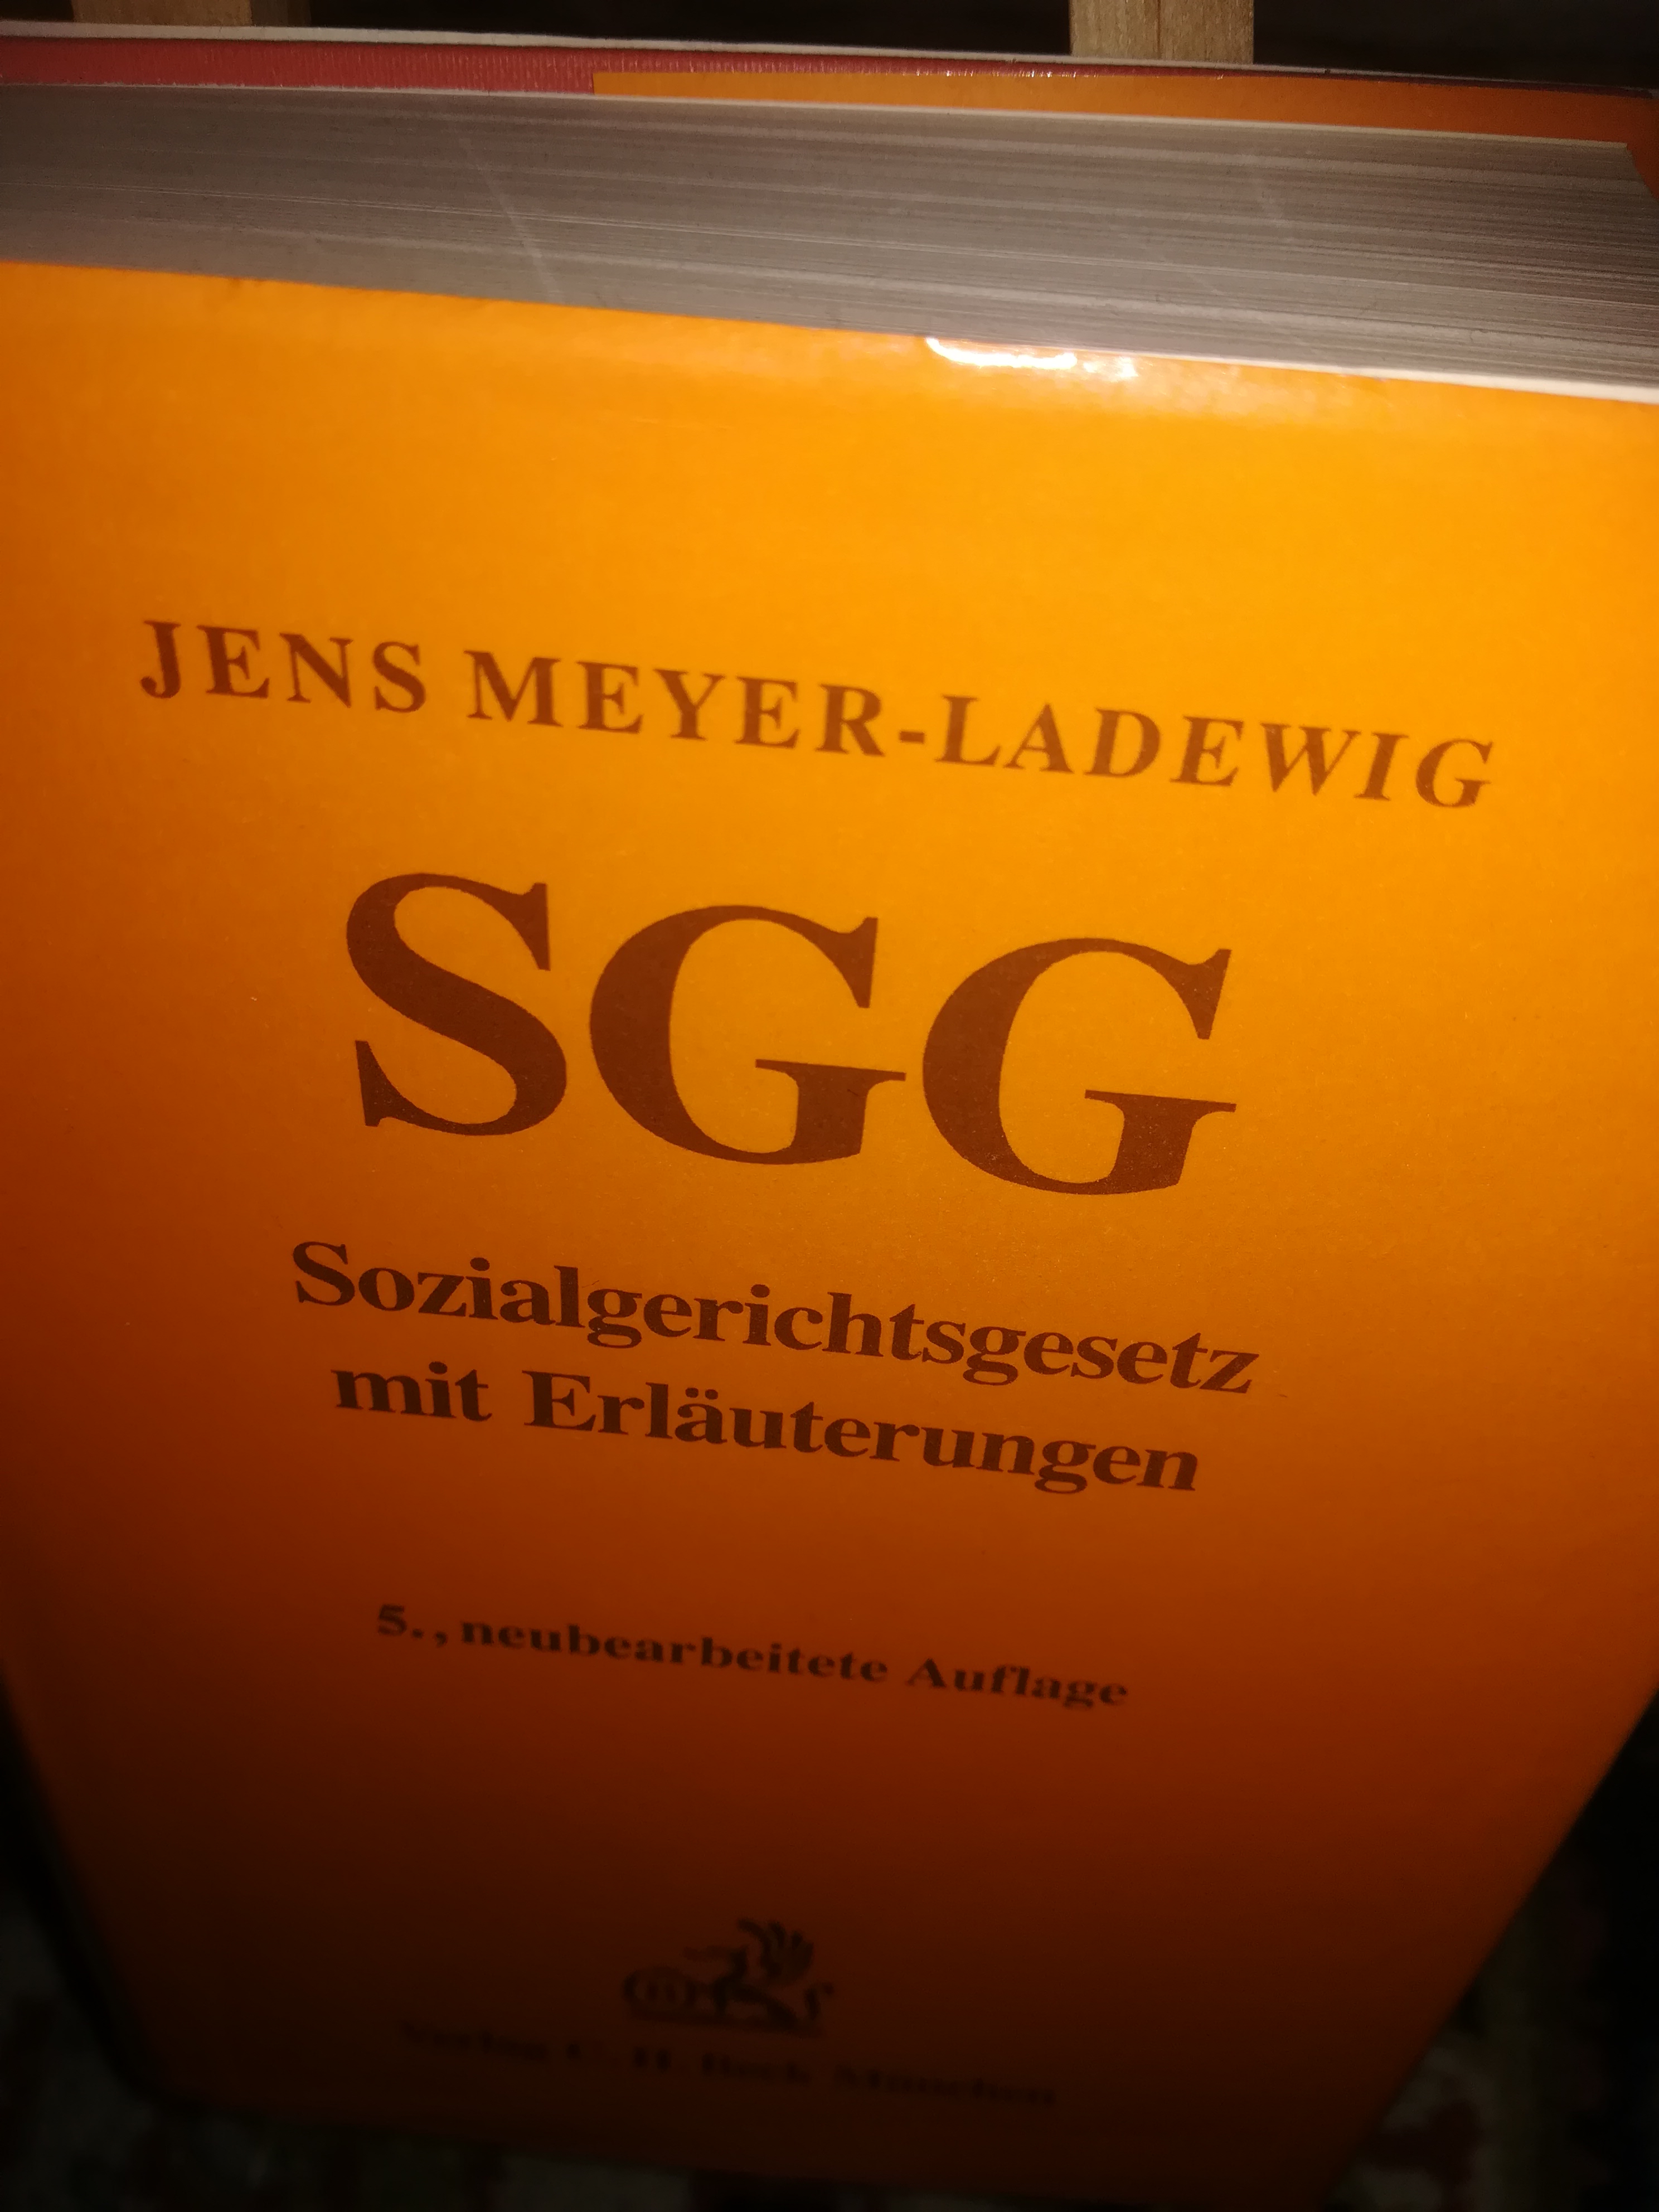 SGG Sozialgerichtsgesetz mit Erläuterungen, 5. neubearbeitete Auflage - Meyer-Ladewig Jens